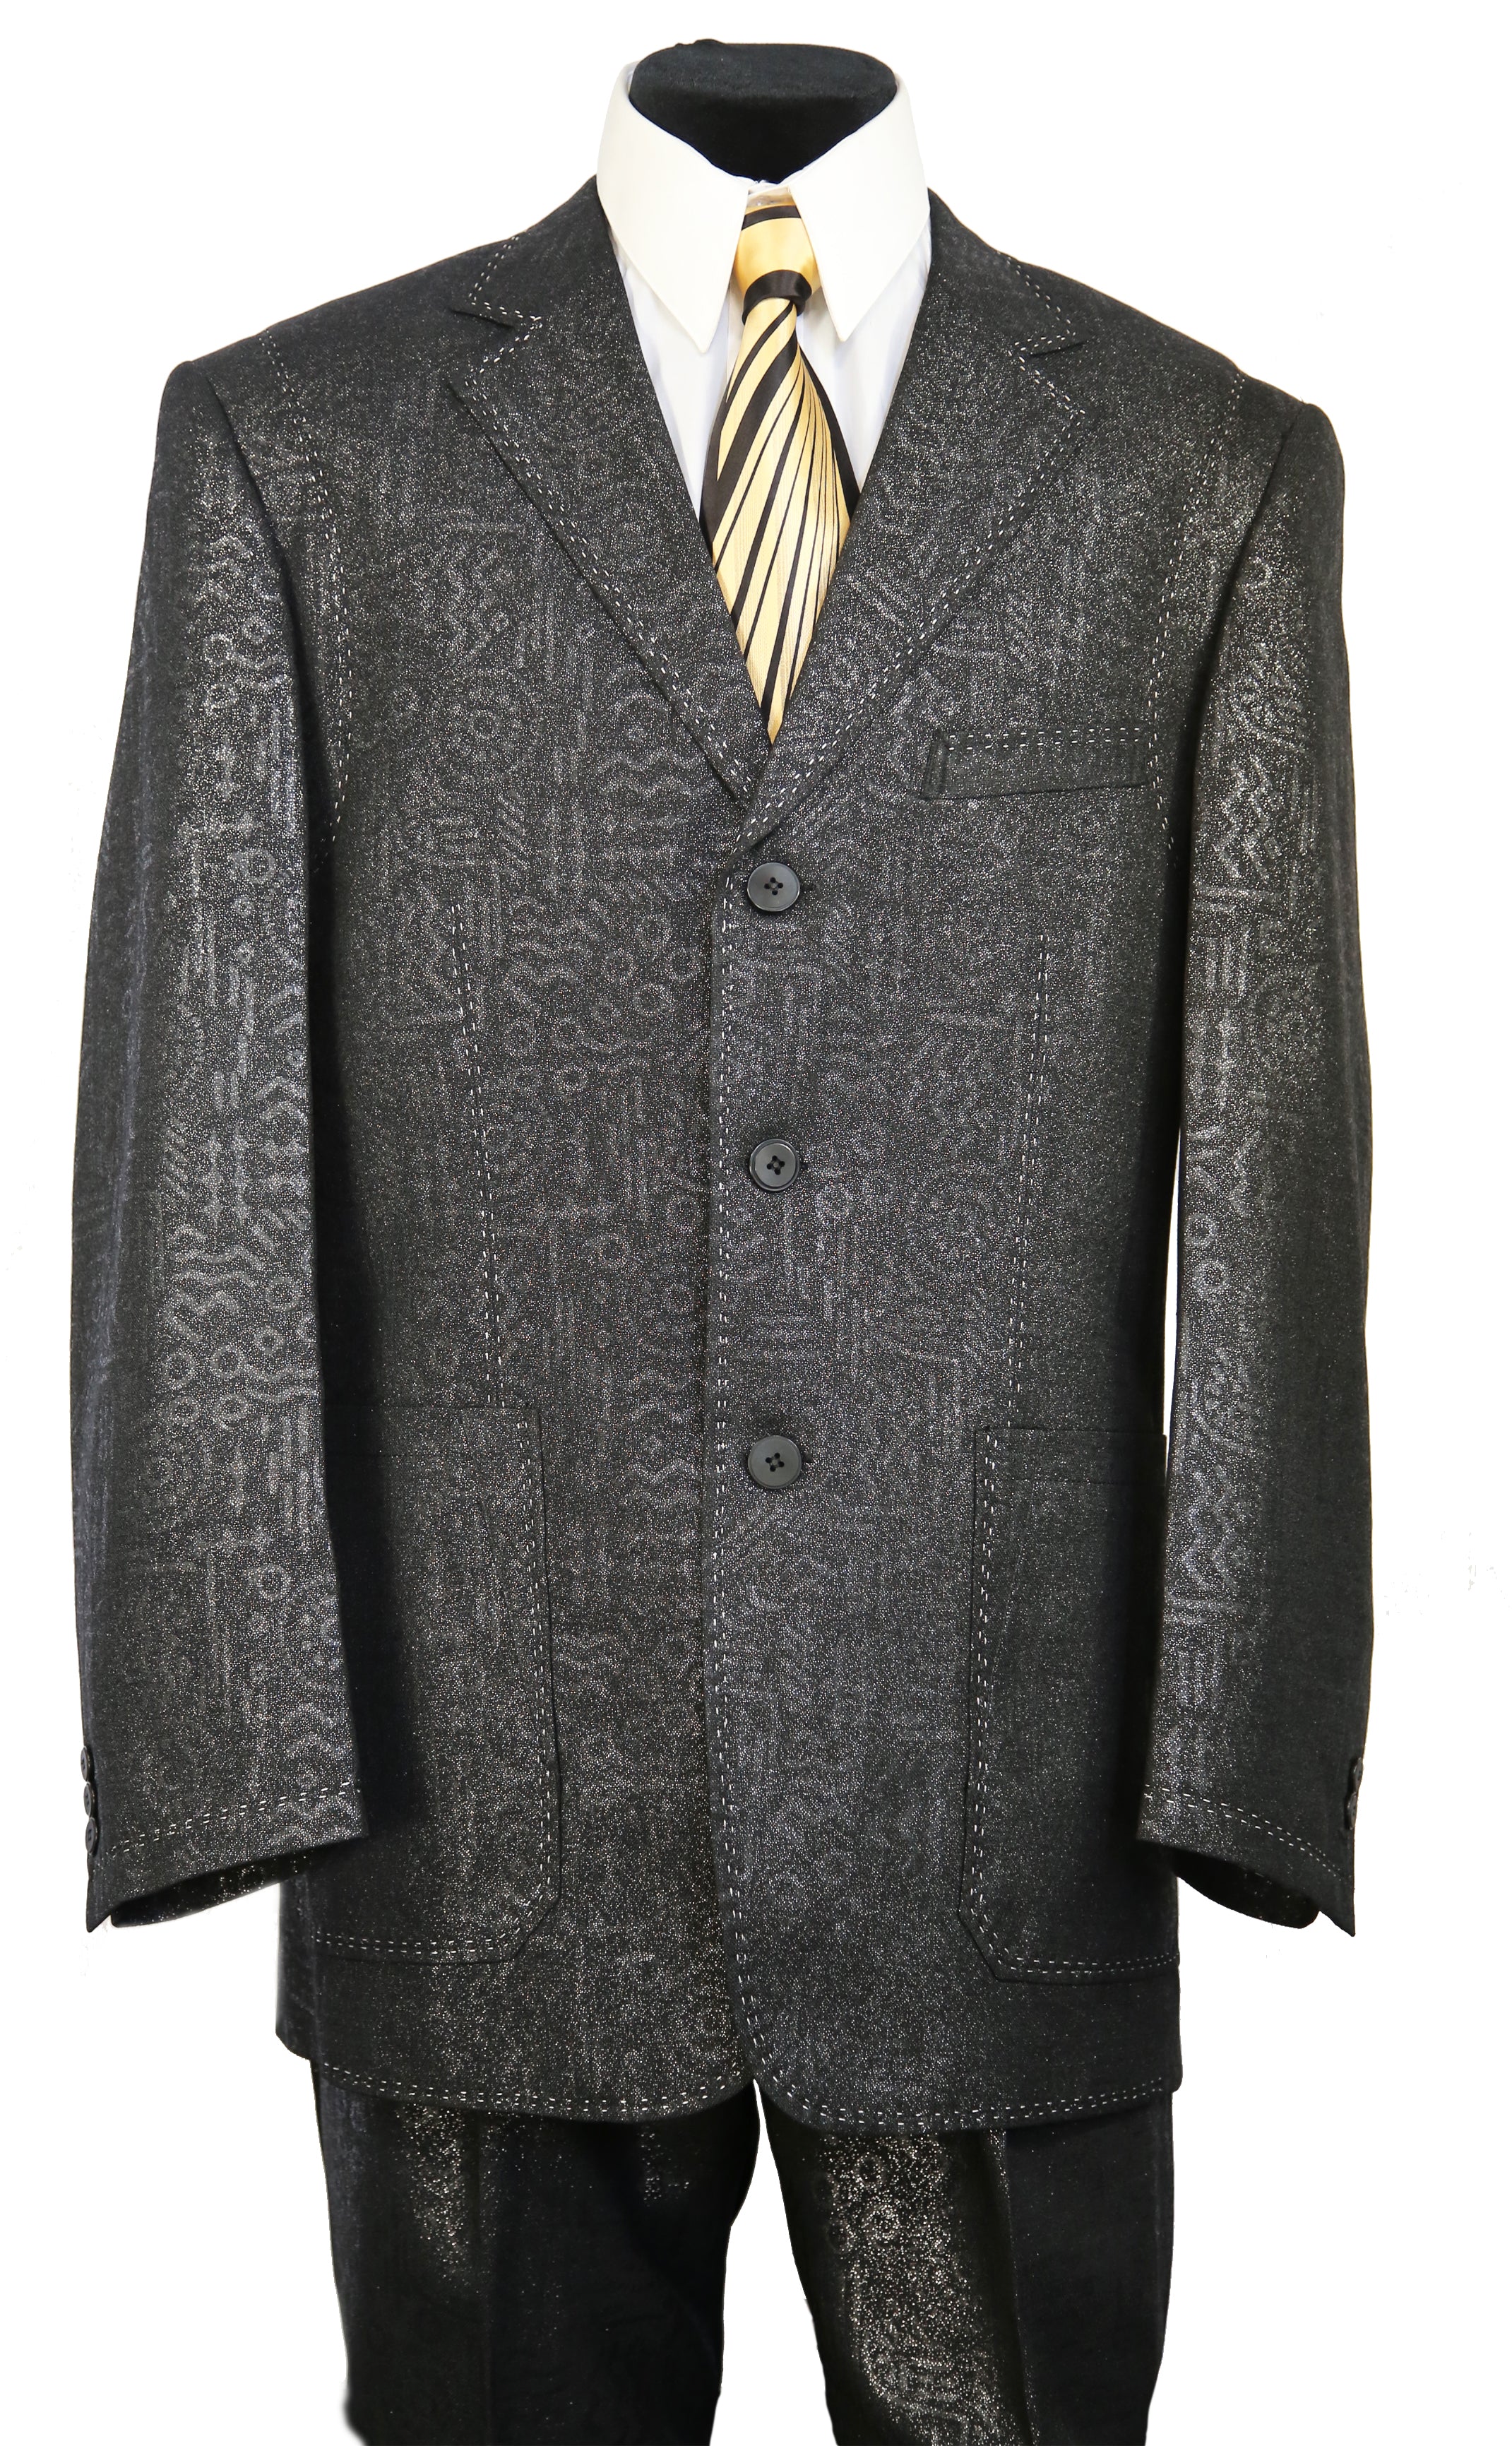 Primordial Shapes Emblazoned 2pc Zoot Suit Set - Black w/ Stitch Accents